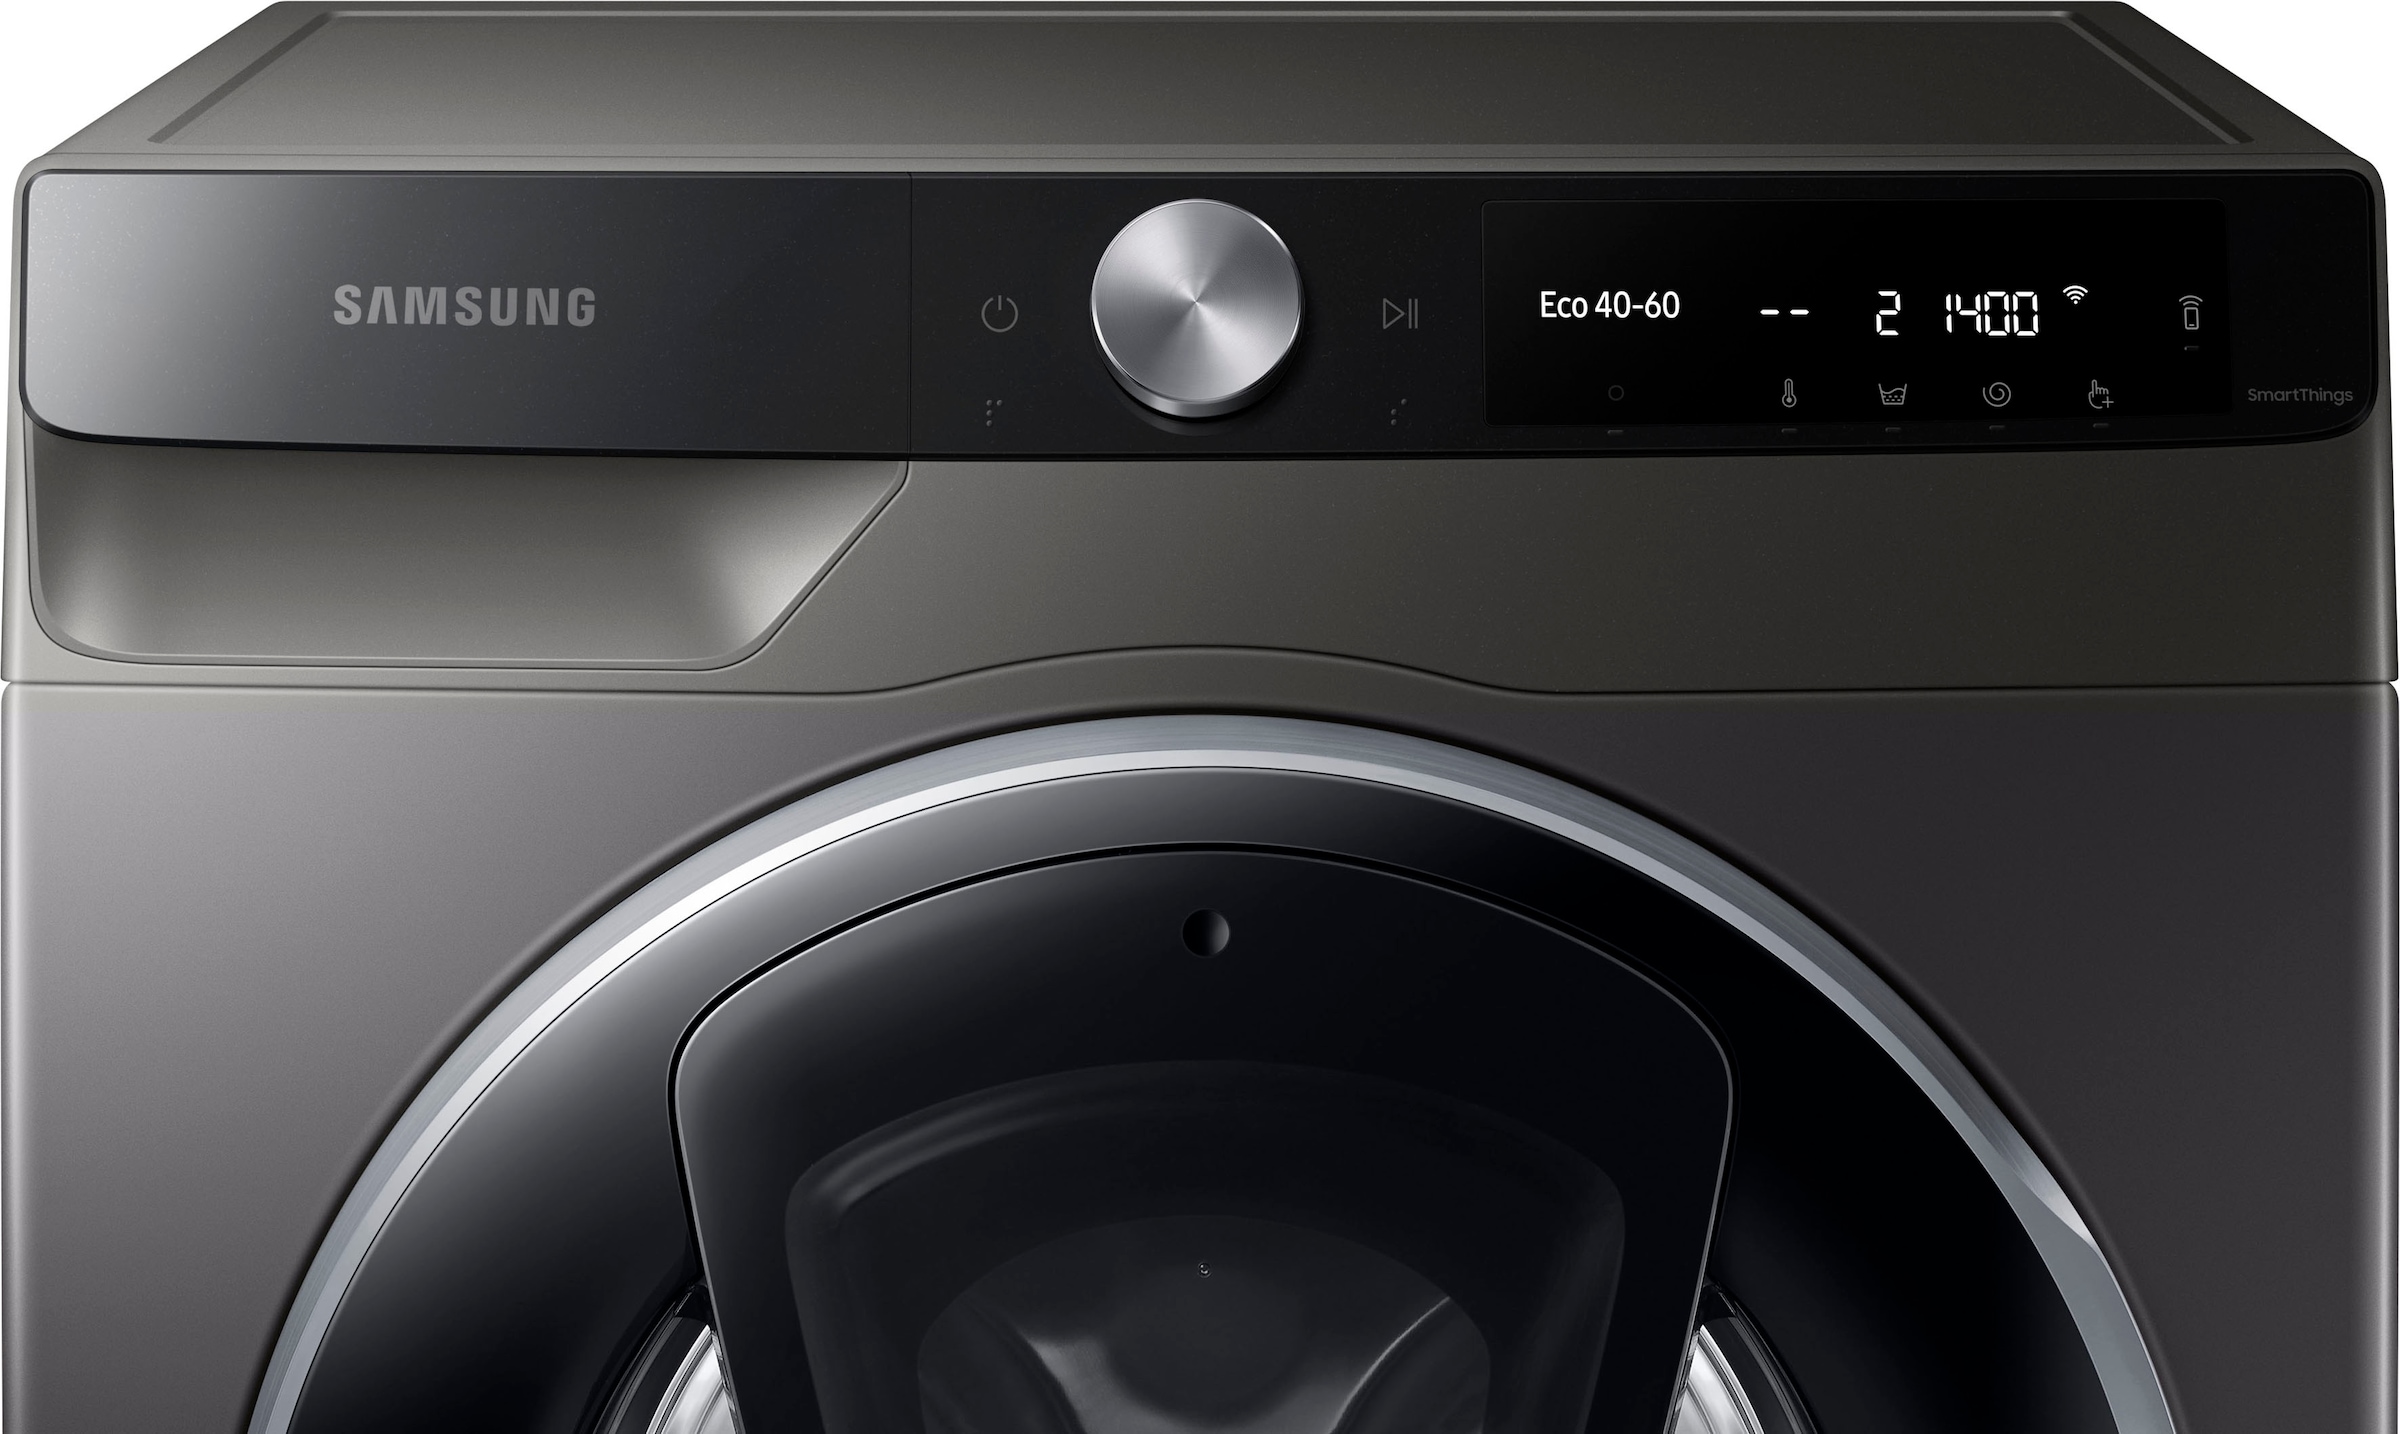 Samsung Waschmaschine »WW80T654ALX«, WW6500T INOX, WW80T654ALX, 8 kg, 1400 U/min, AddWash™